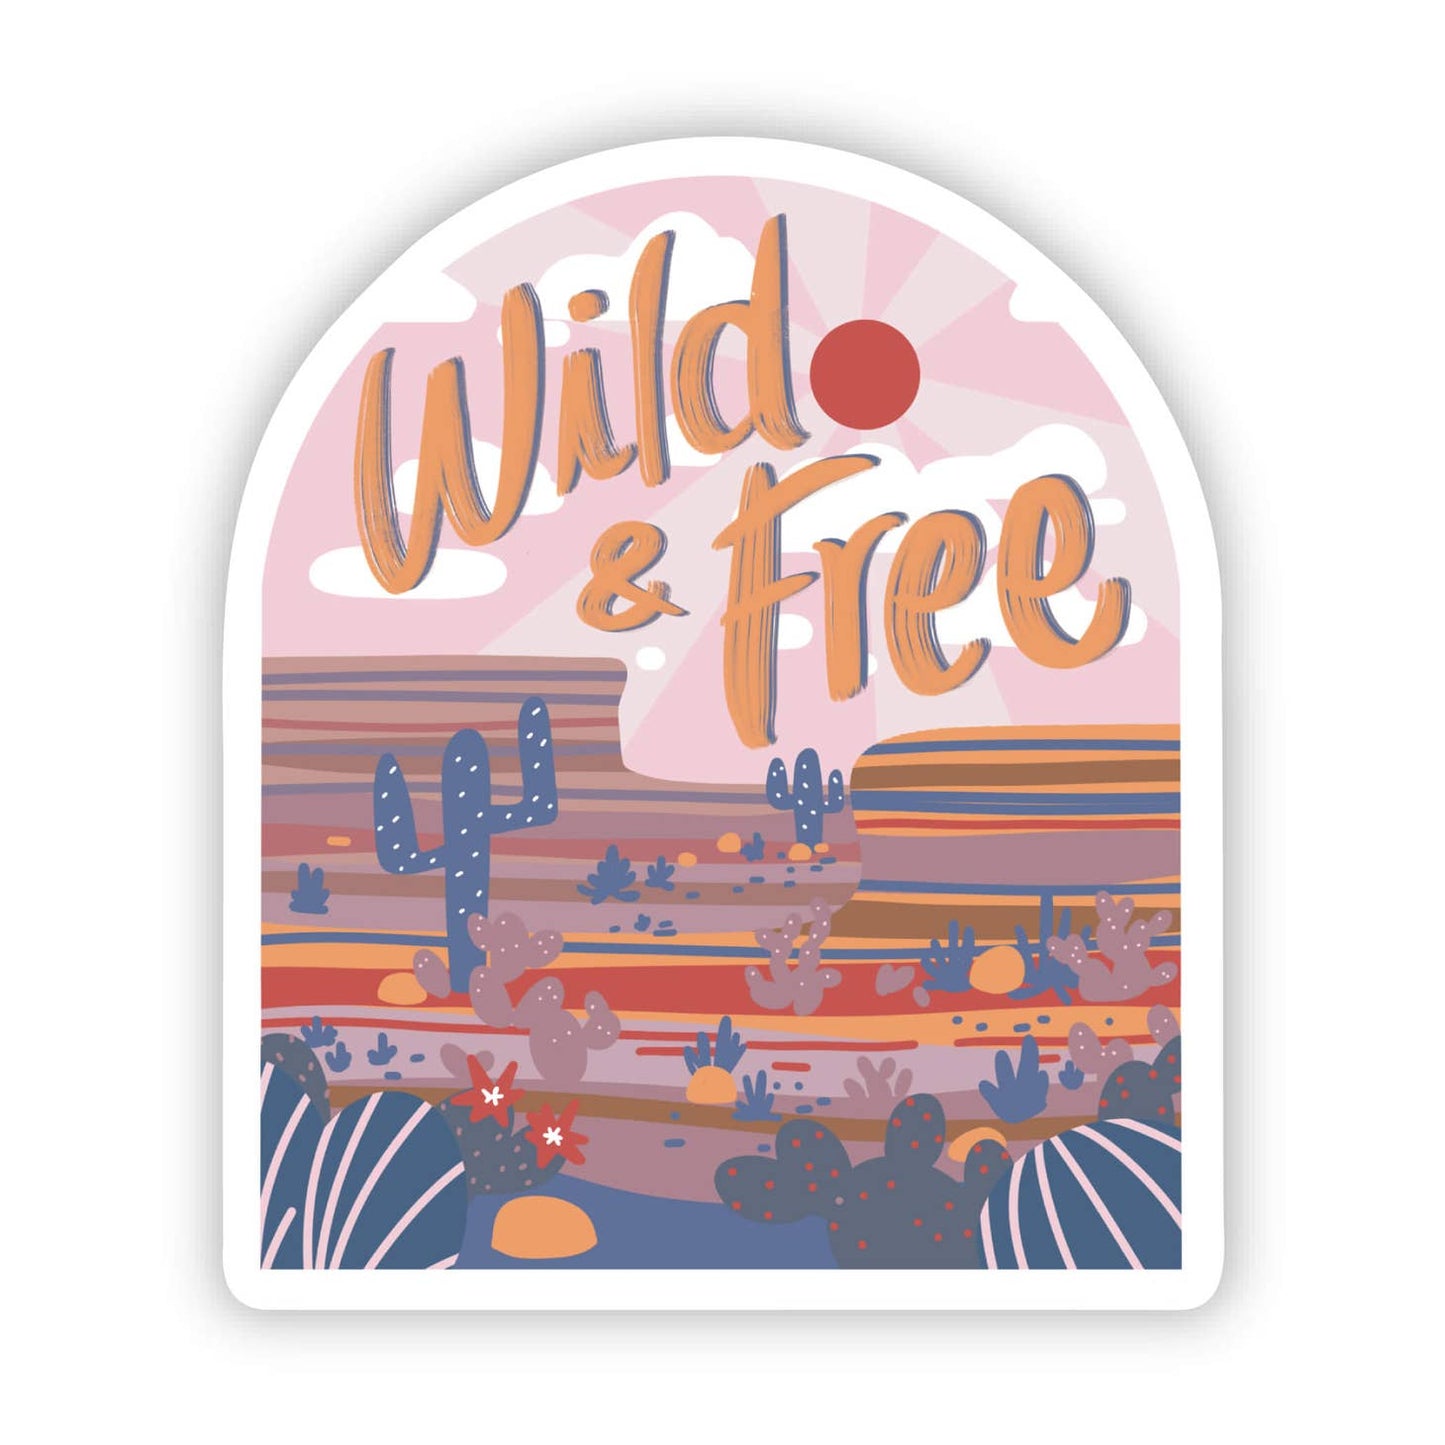 Western "Wild & Free" Sticker